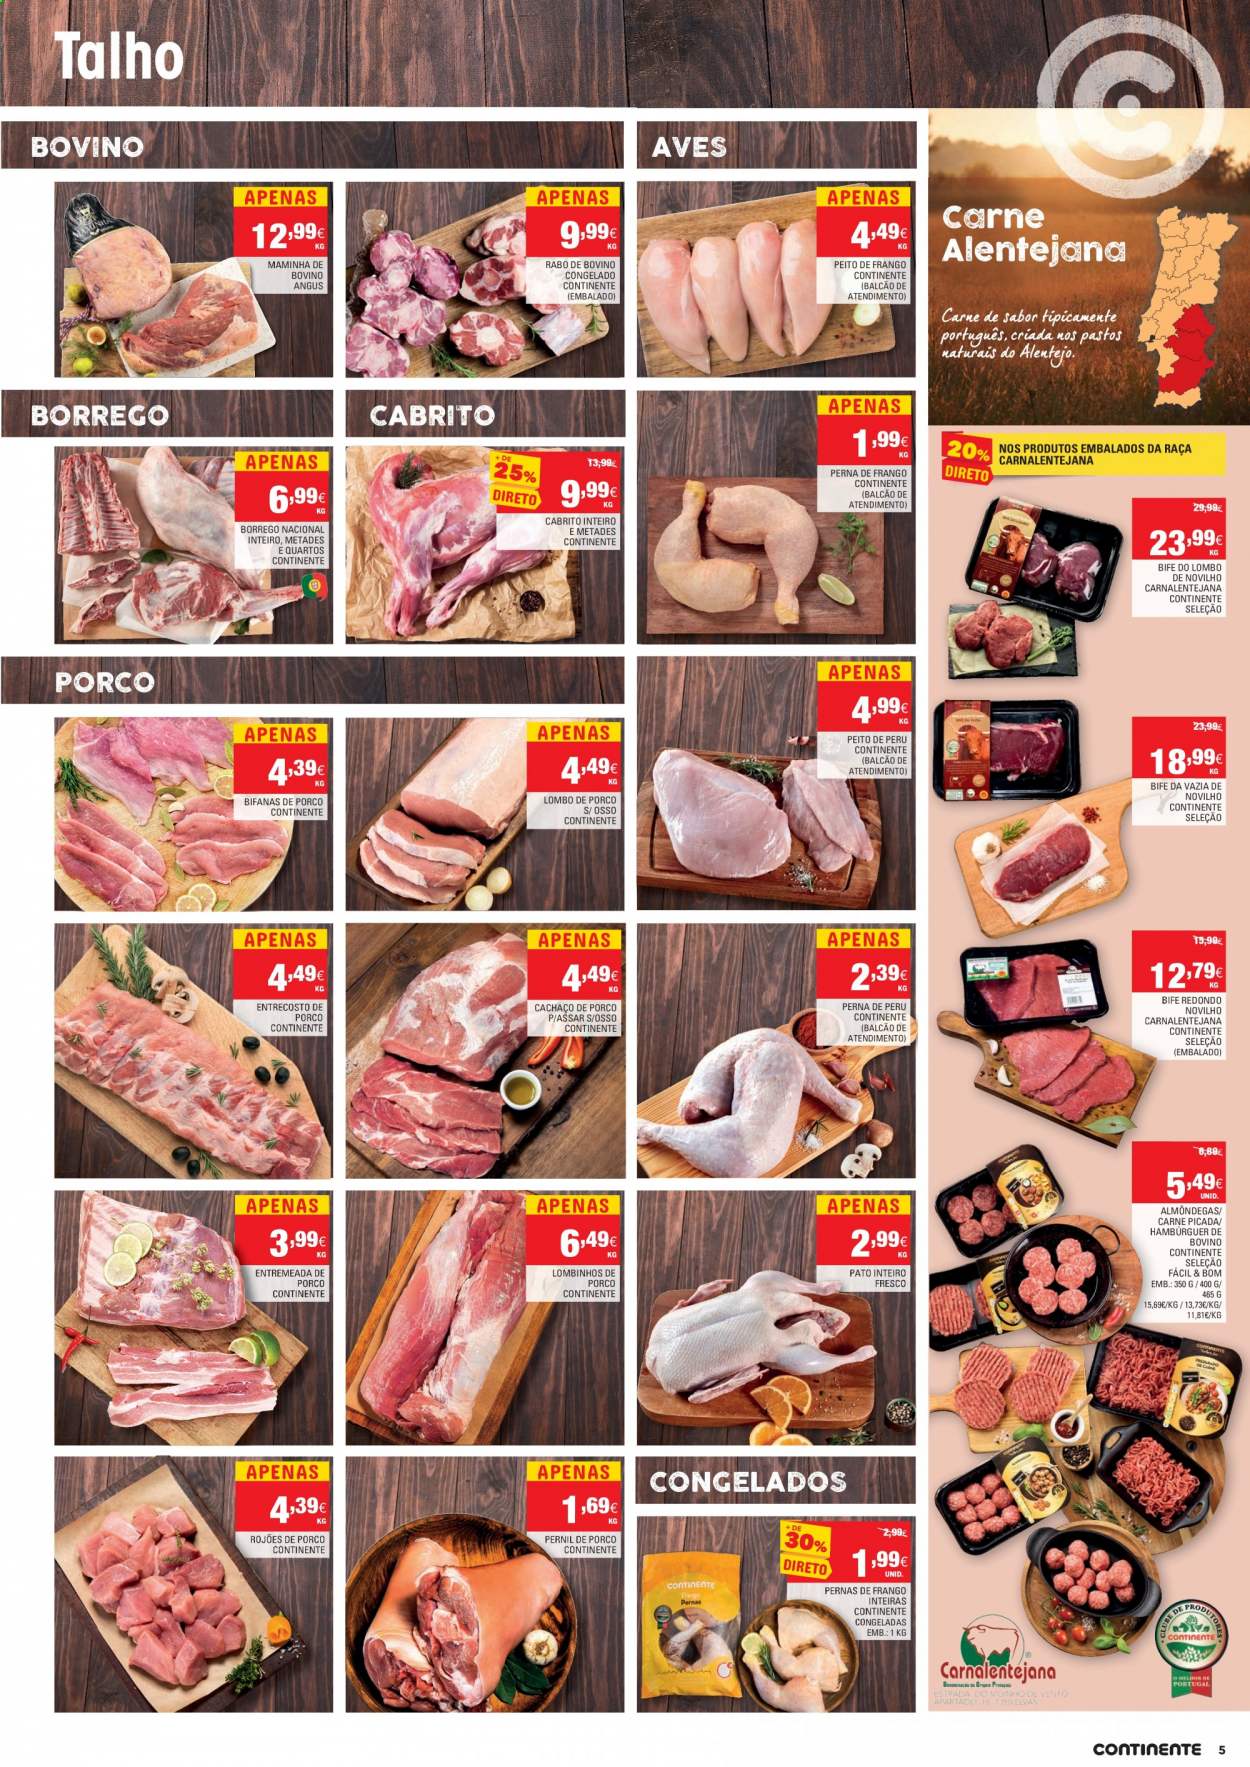 thumbnail - Folheto Continente - 20.4.2021 - 26.4.2021 - Produtos em promoção - bife, lombo, carne, pernil, pernil suíno, lombo de porco, entremeada de porco, cachaço de porco, rojões de porco, bifanas, pato inteiro, peito de frango, peito de peru, perú, perna de frango, pato, alcatra, rabo de bovino, carne de novilho, Angus, maminha, hamburger, carne moída, almôndegas, cabrito. Página 5.